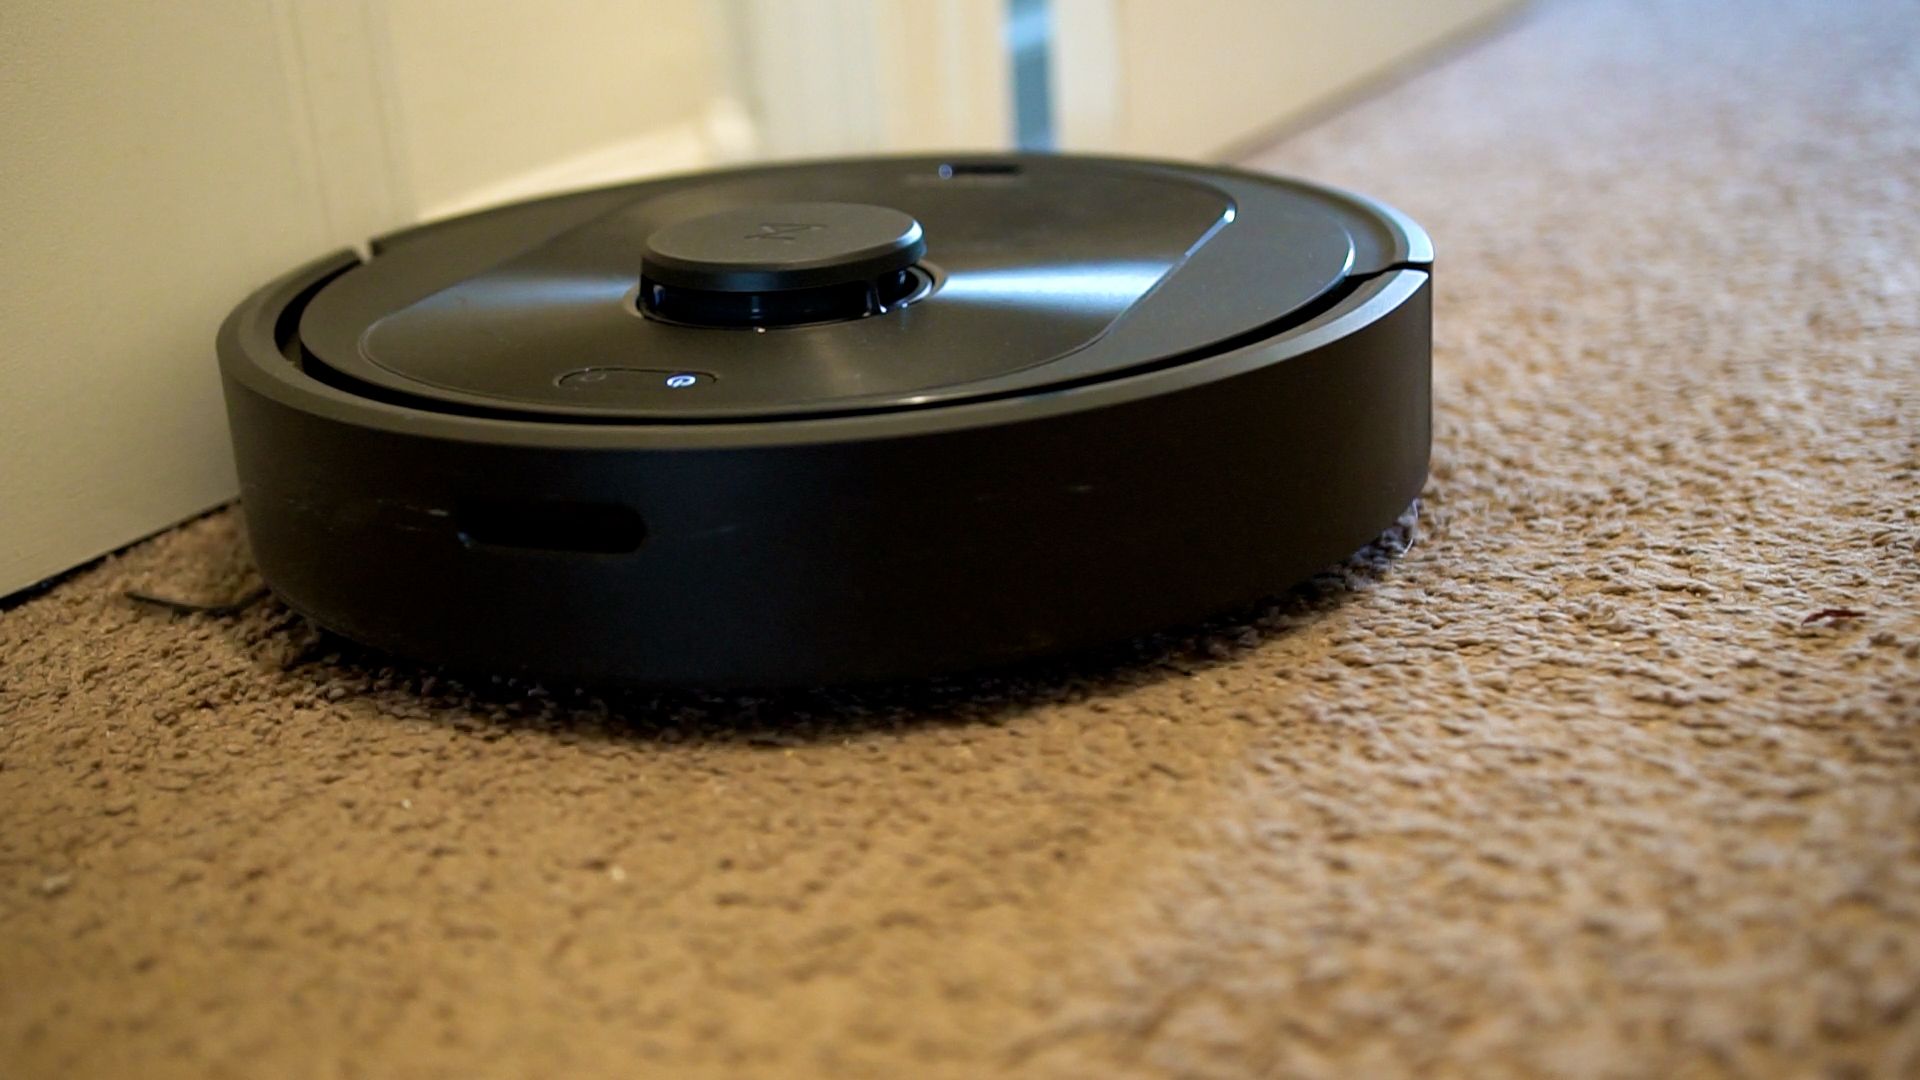 Roborock Q5+ Review: Reliable Robot Vacuum